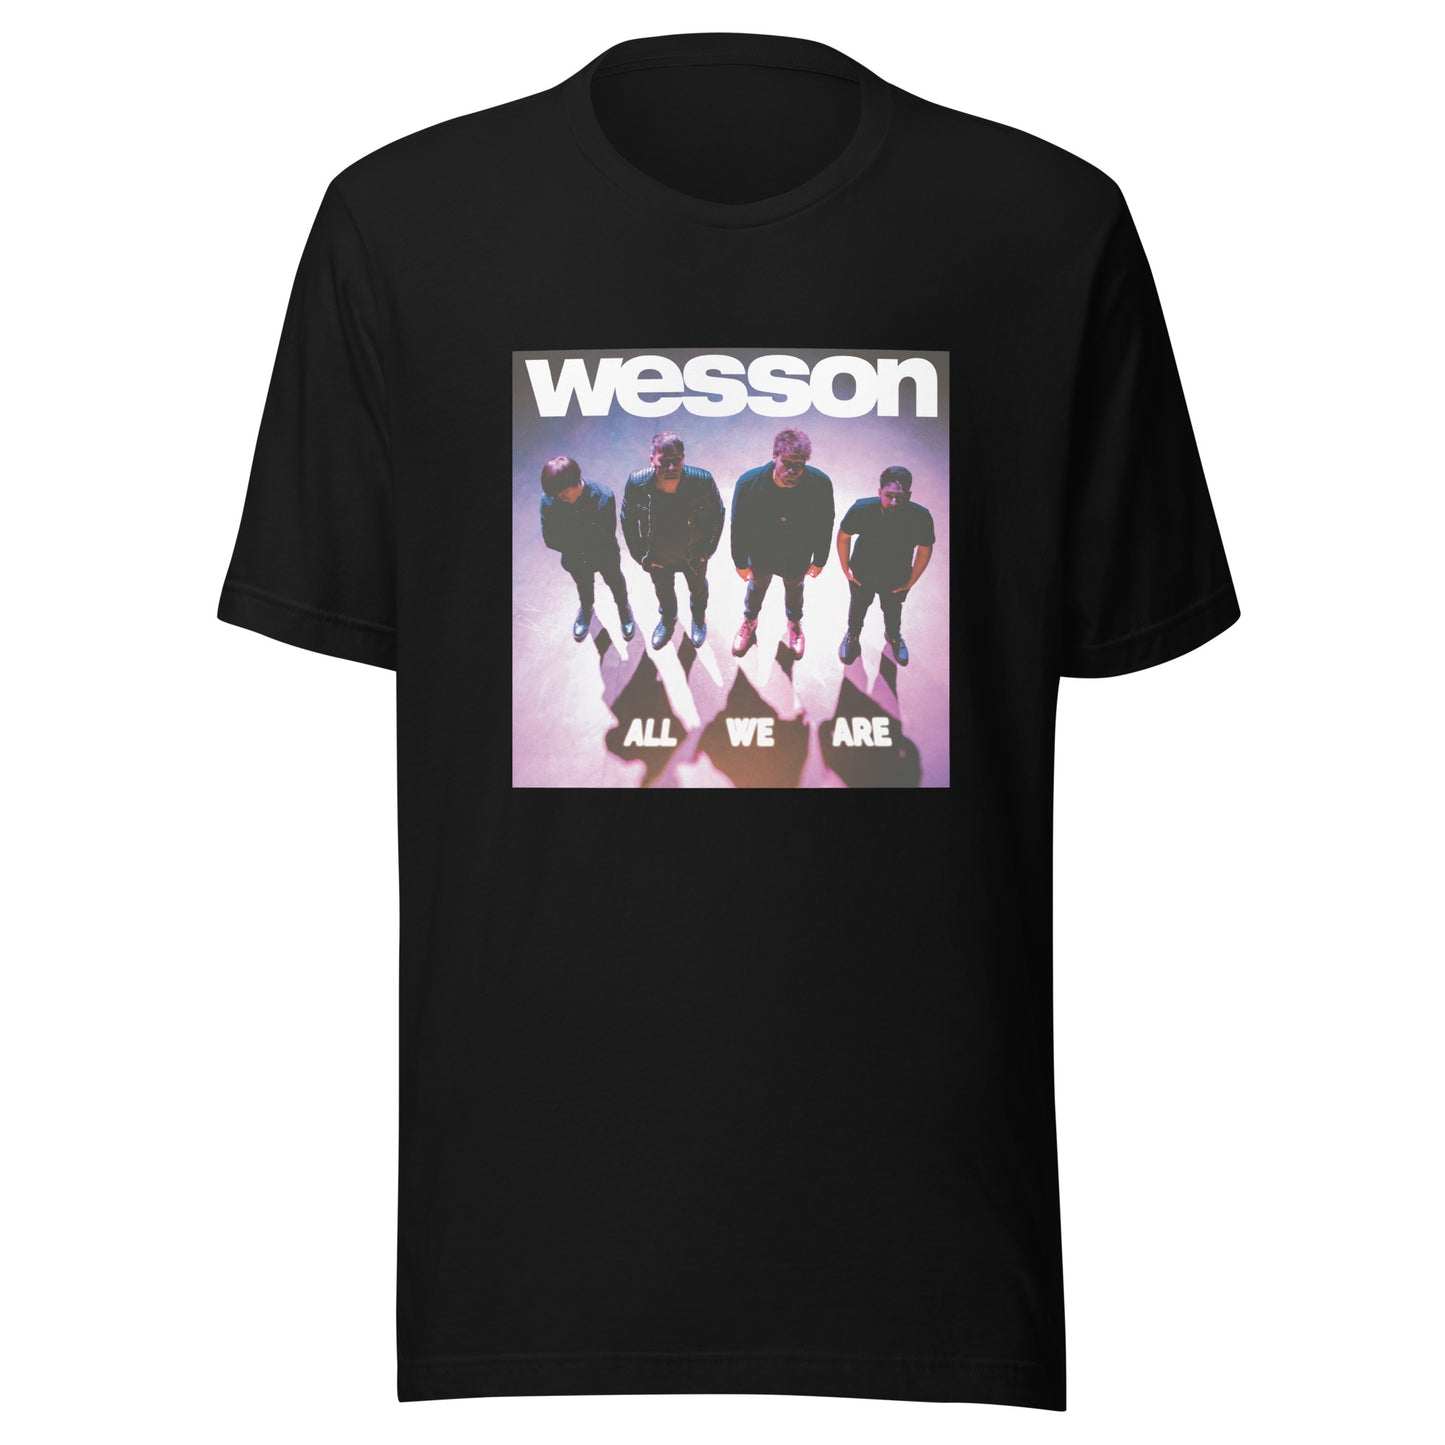 Unisex t-shirt - All We Are Album Artwork